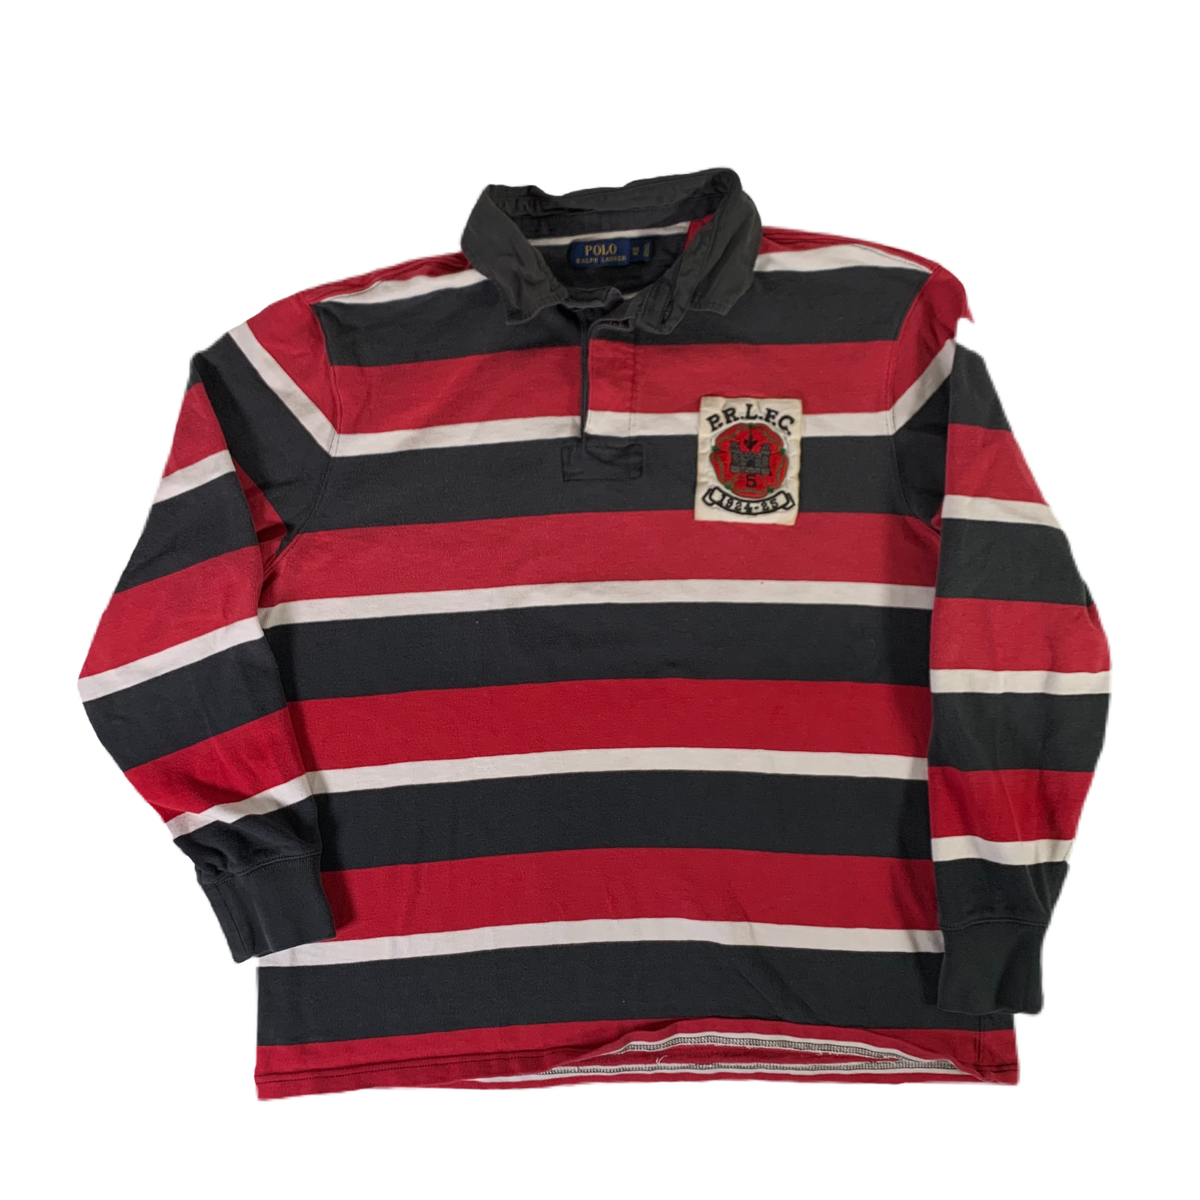 Vintage Ralph Lauren &quot;P.R.L.F.C.&quot; Rugby Shirt